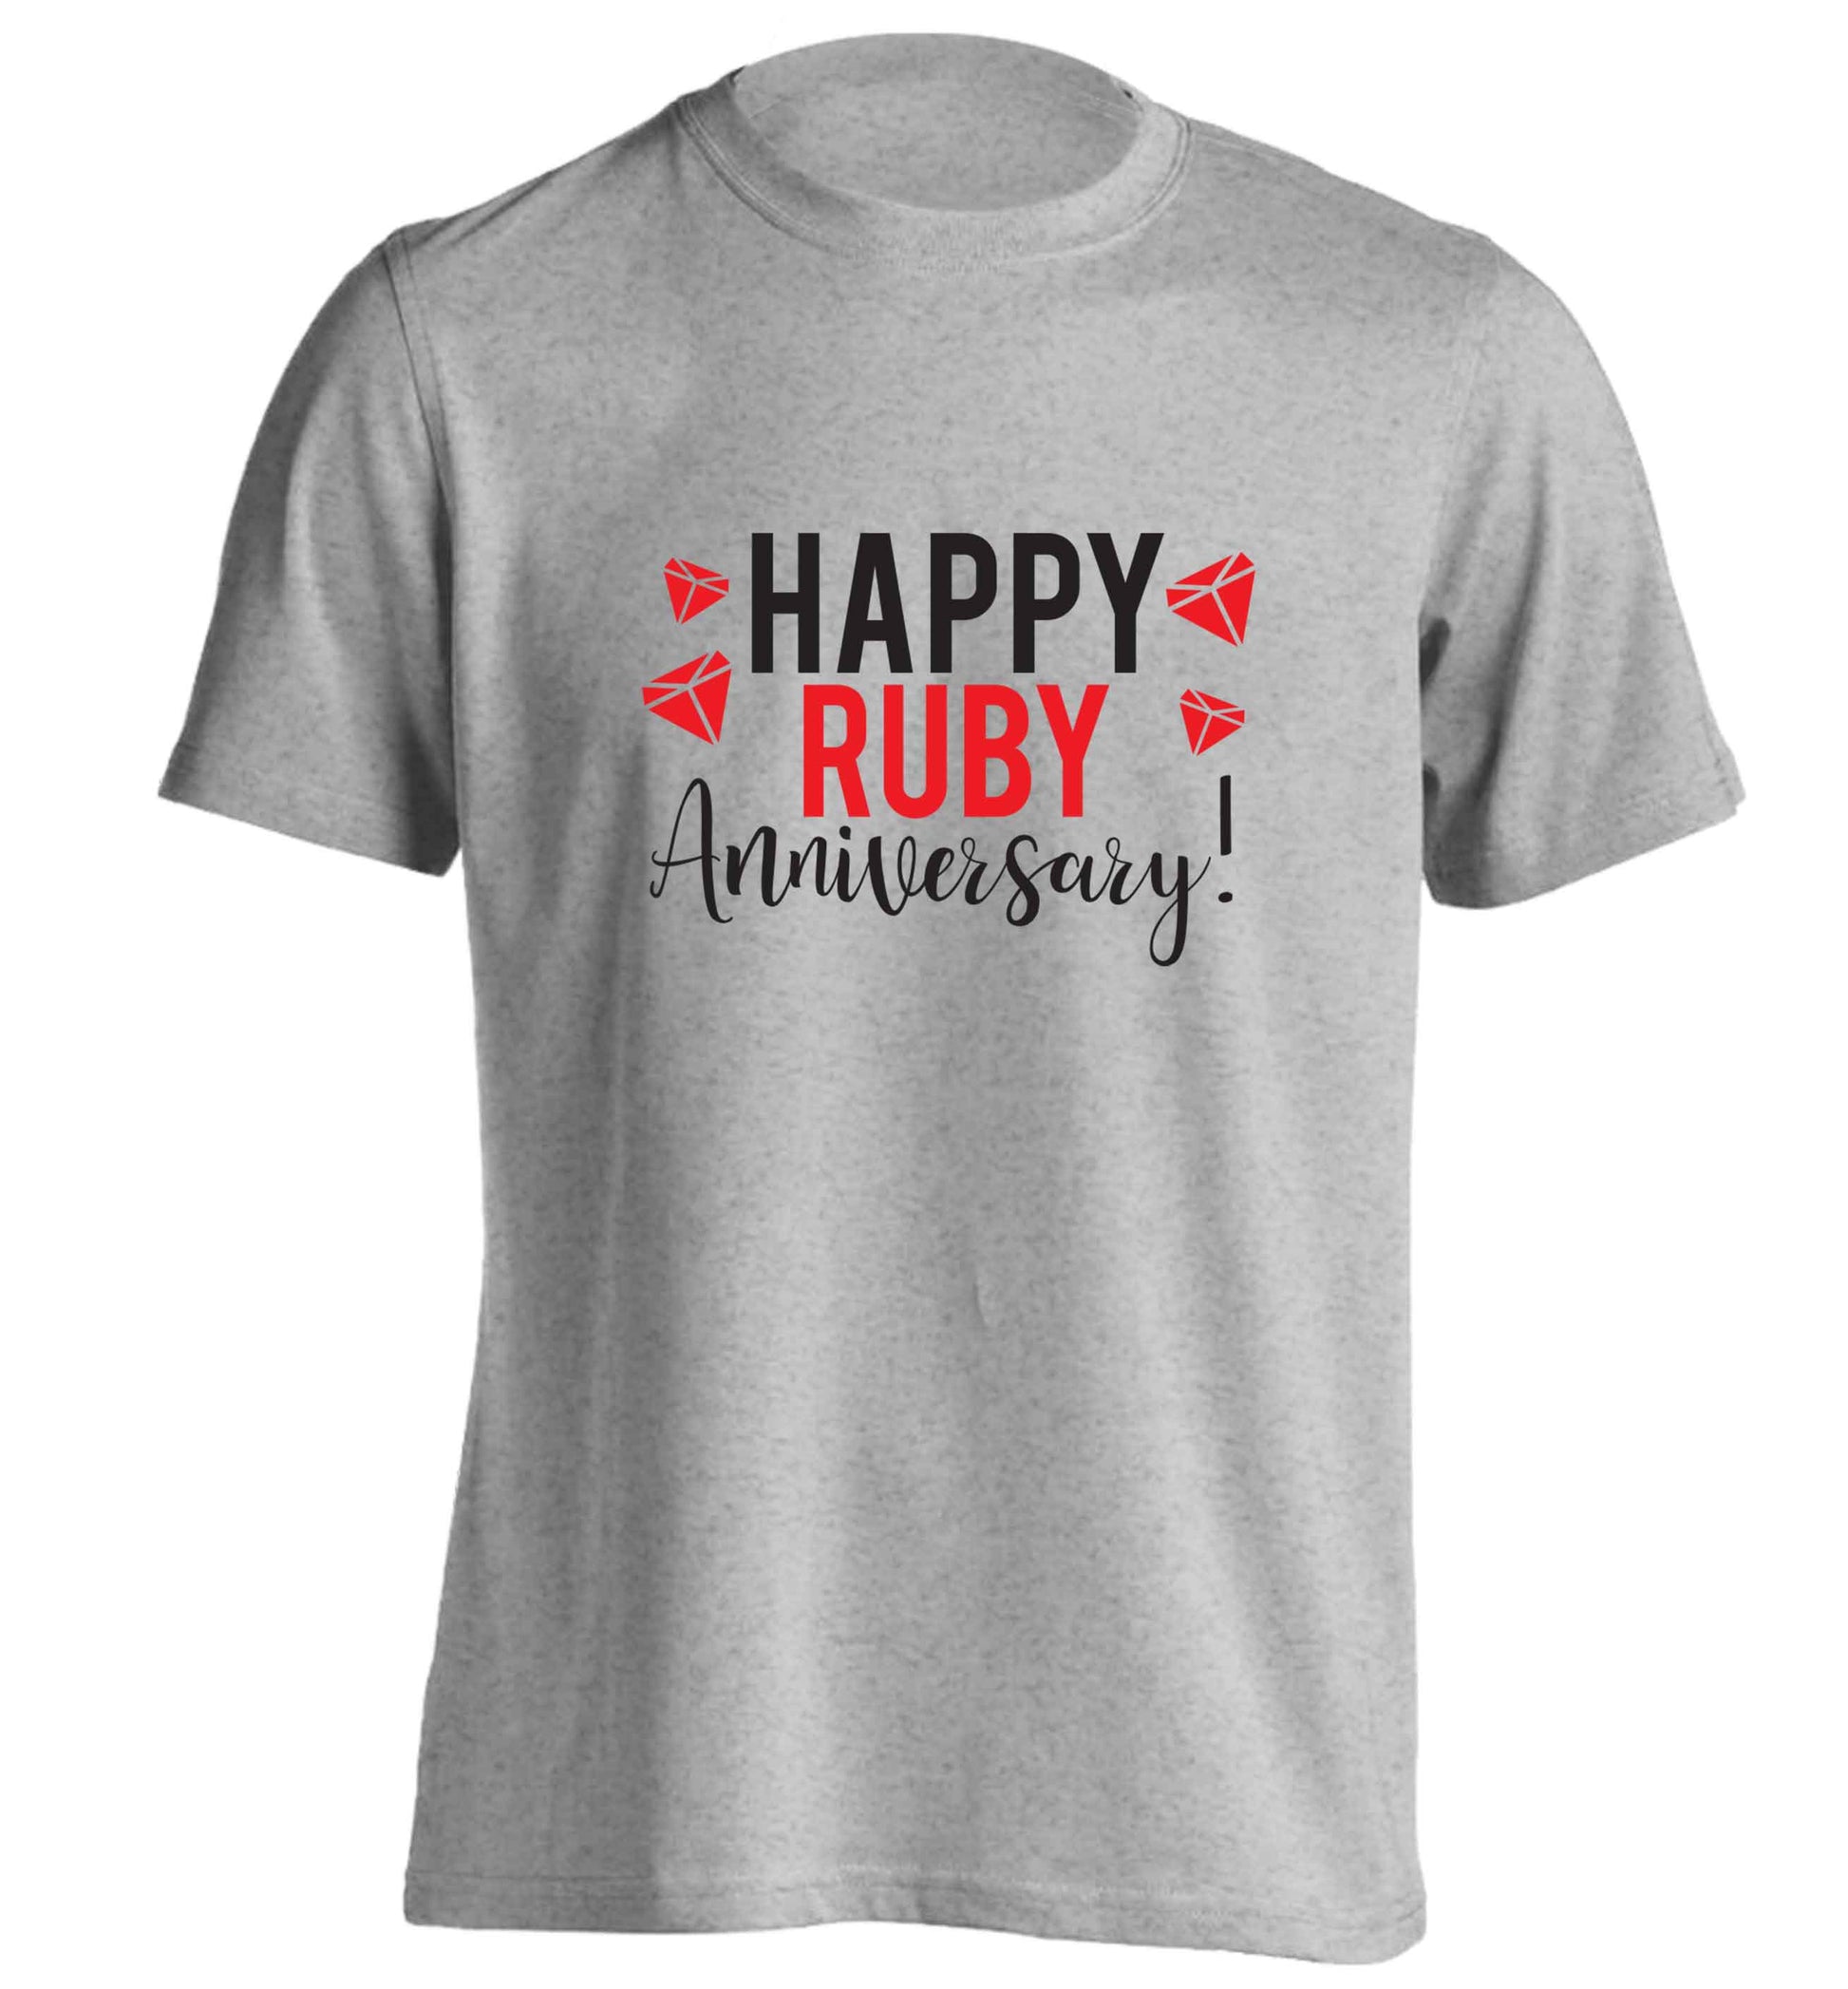 Happy ruby anniversary! adults unisex grey Tshirt 2XL